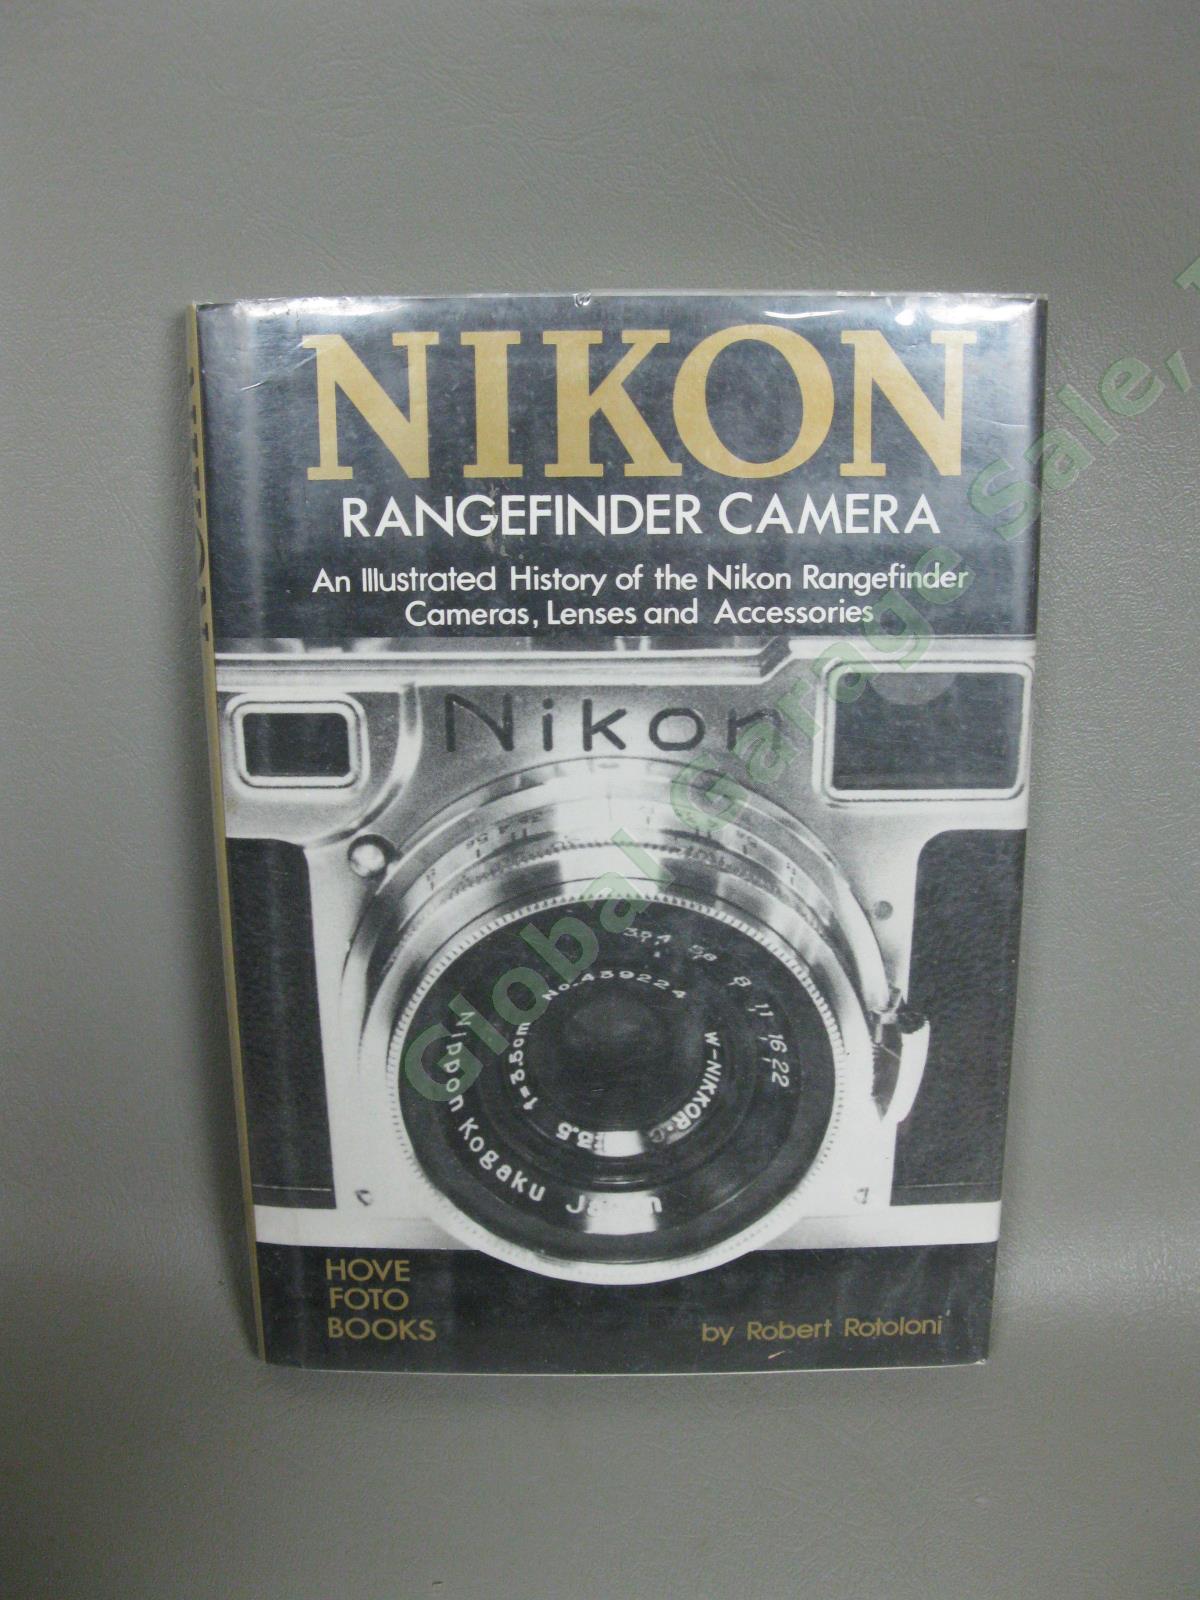 VTG Nikon Film Camera Books Manuals & Rangefinder Illustrated History SIGNED NR 1